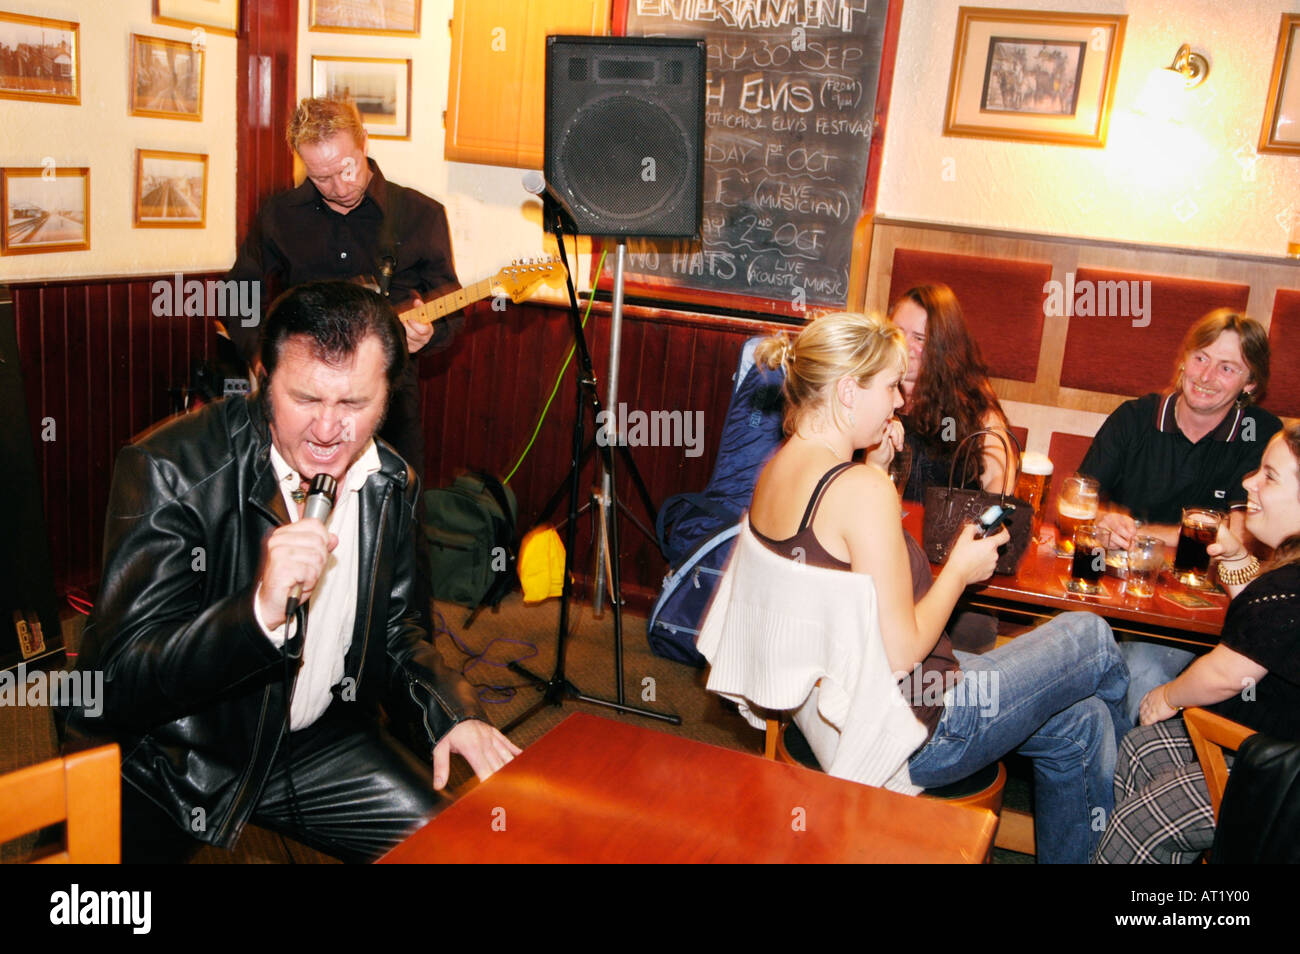 Gareth Jones un Elvis Tribute Act d'effectuer dans un pub dans le cadre de l'Assemblée Festival Elvis Porthcawl, South Wales, UK Banque D'Images